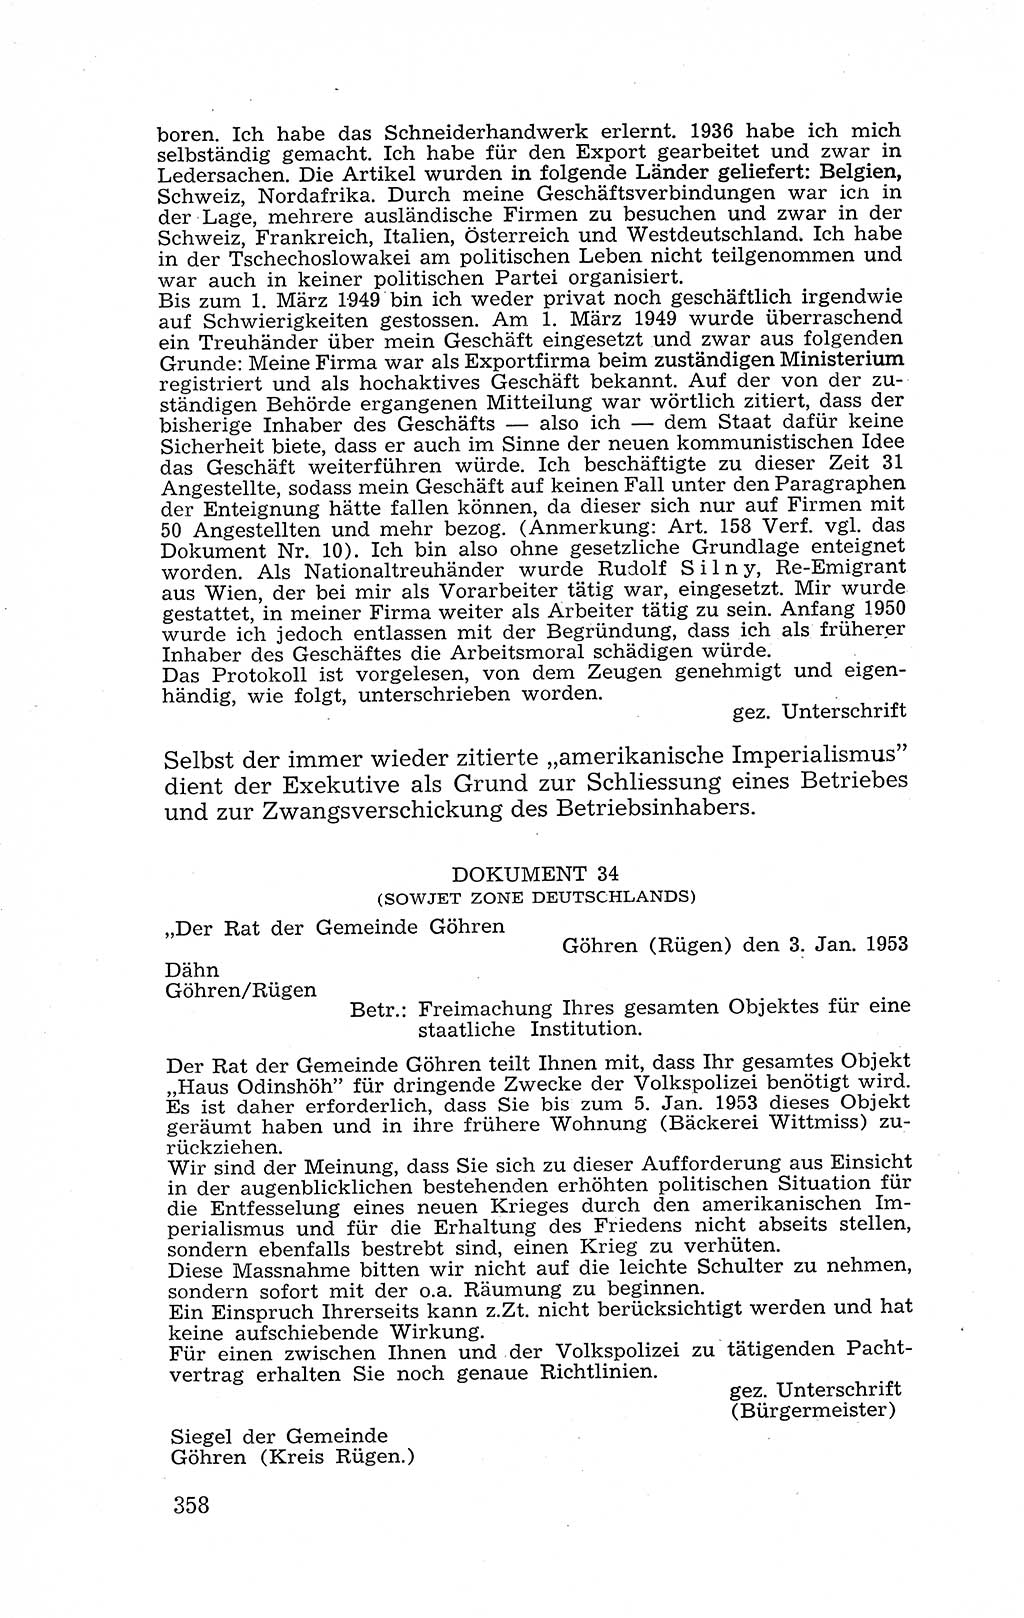 Recht in Fesseln, Dokumente, Internationale Juristen-Kommission [Bundesrepublik Deutschland (BRD)] 1955, Seite 358 (R. Dok. IJK BRD 1955, S. 358)